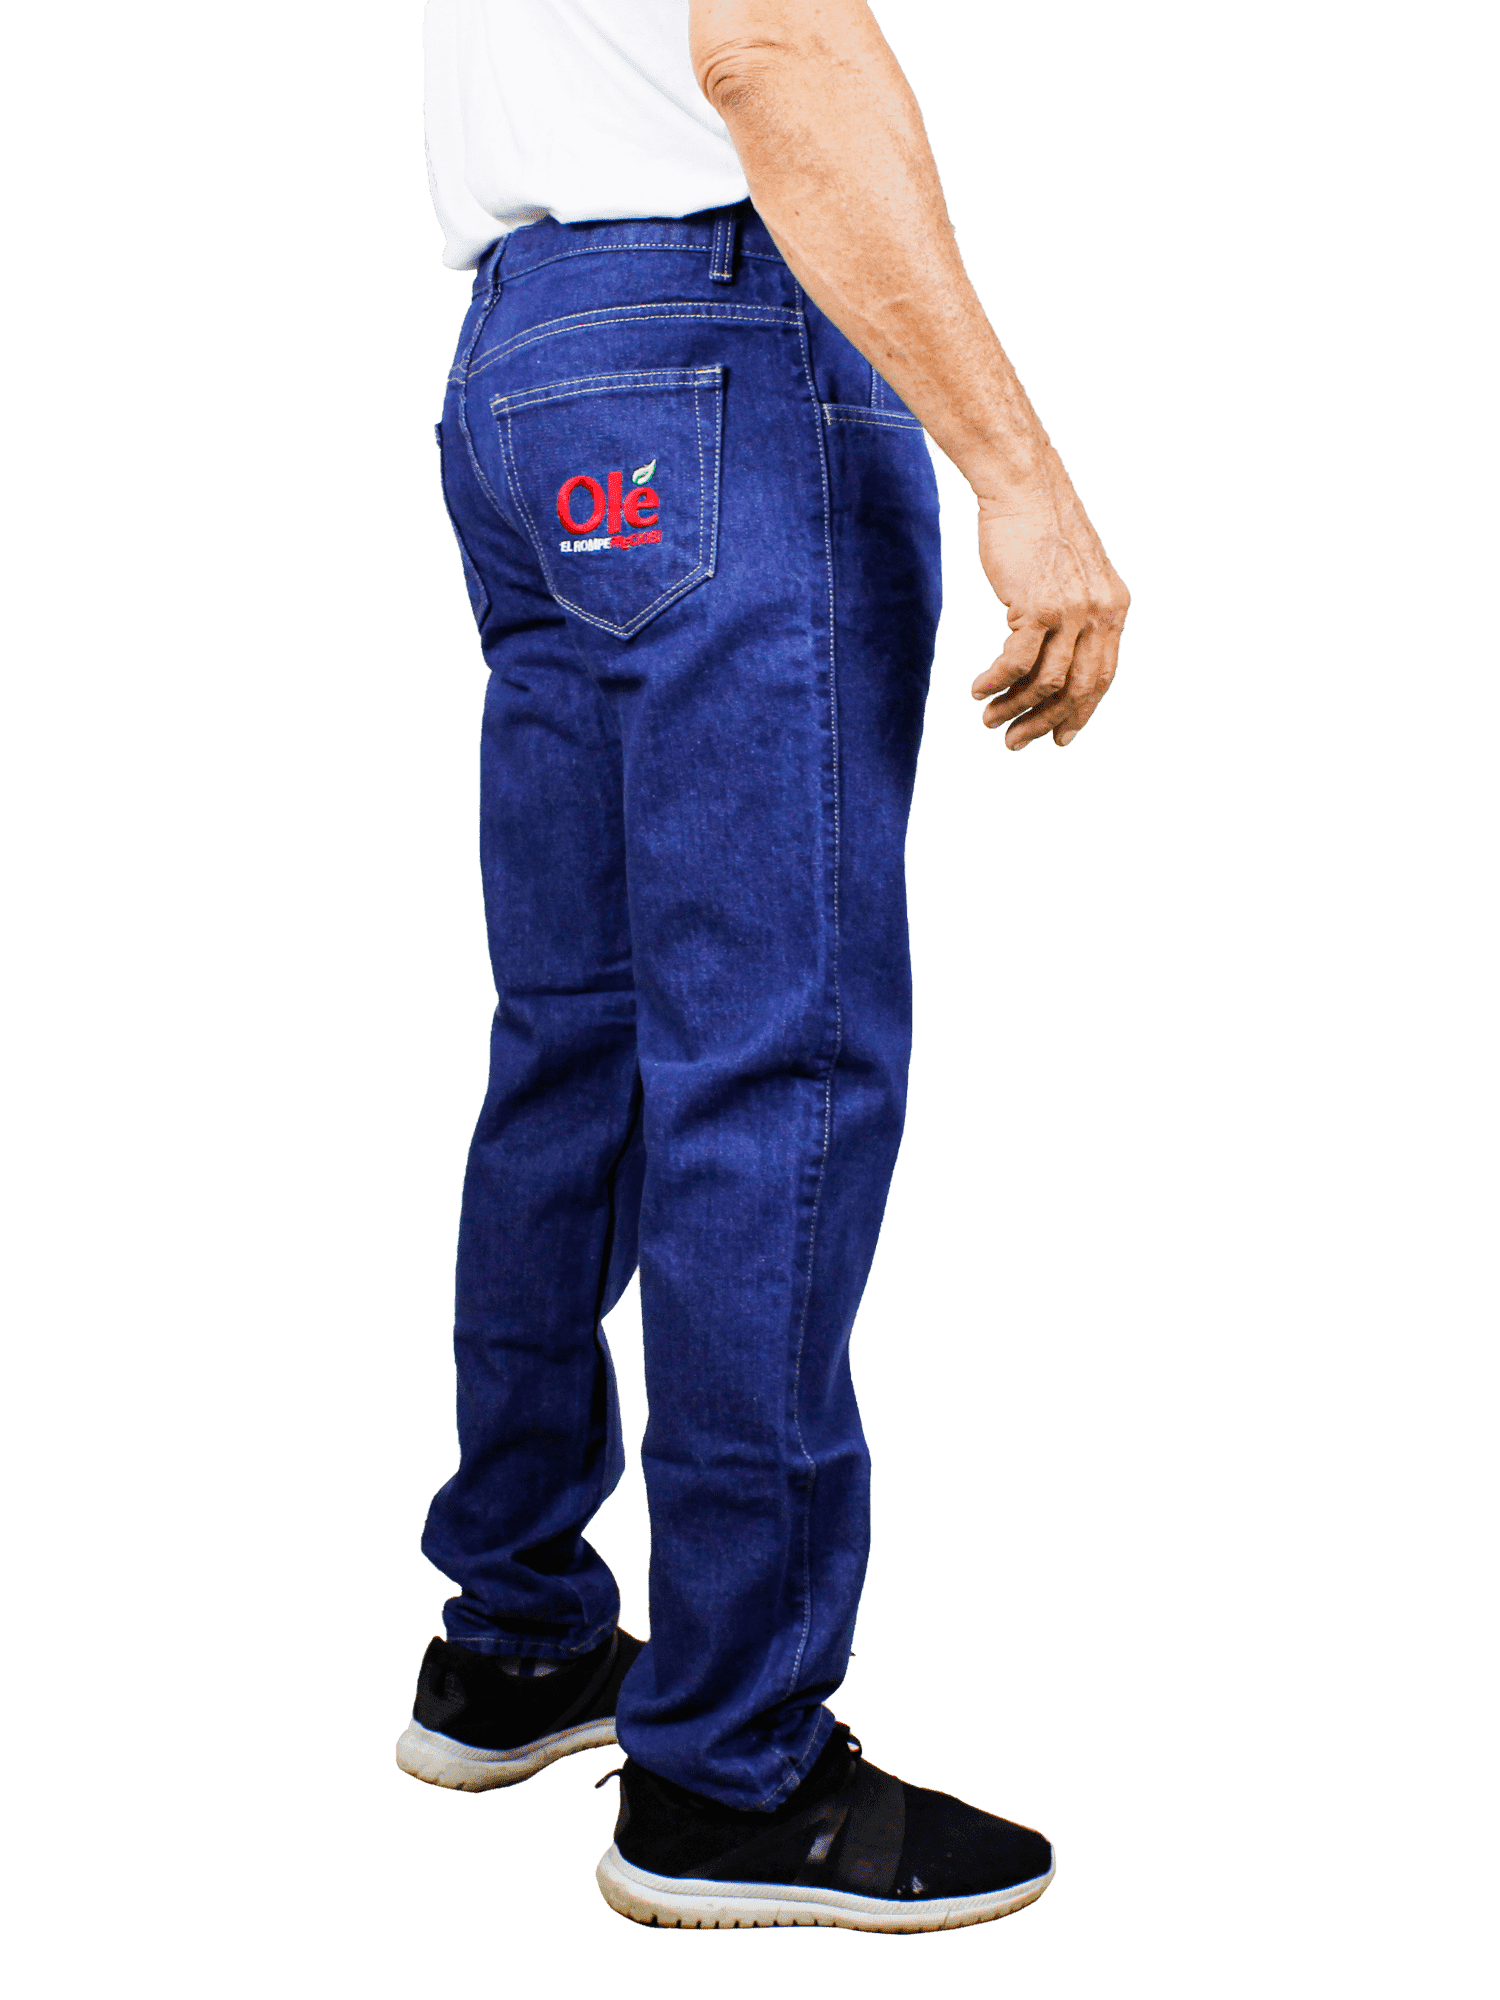 jeans-uniform